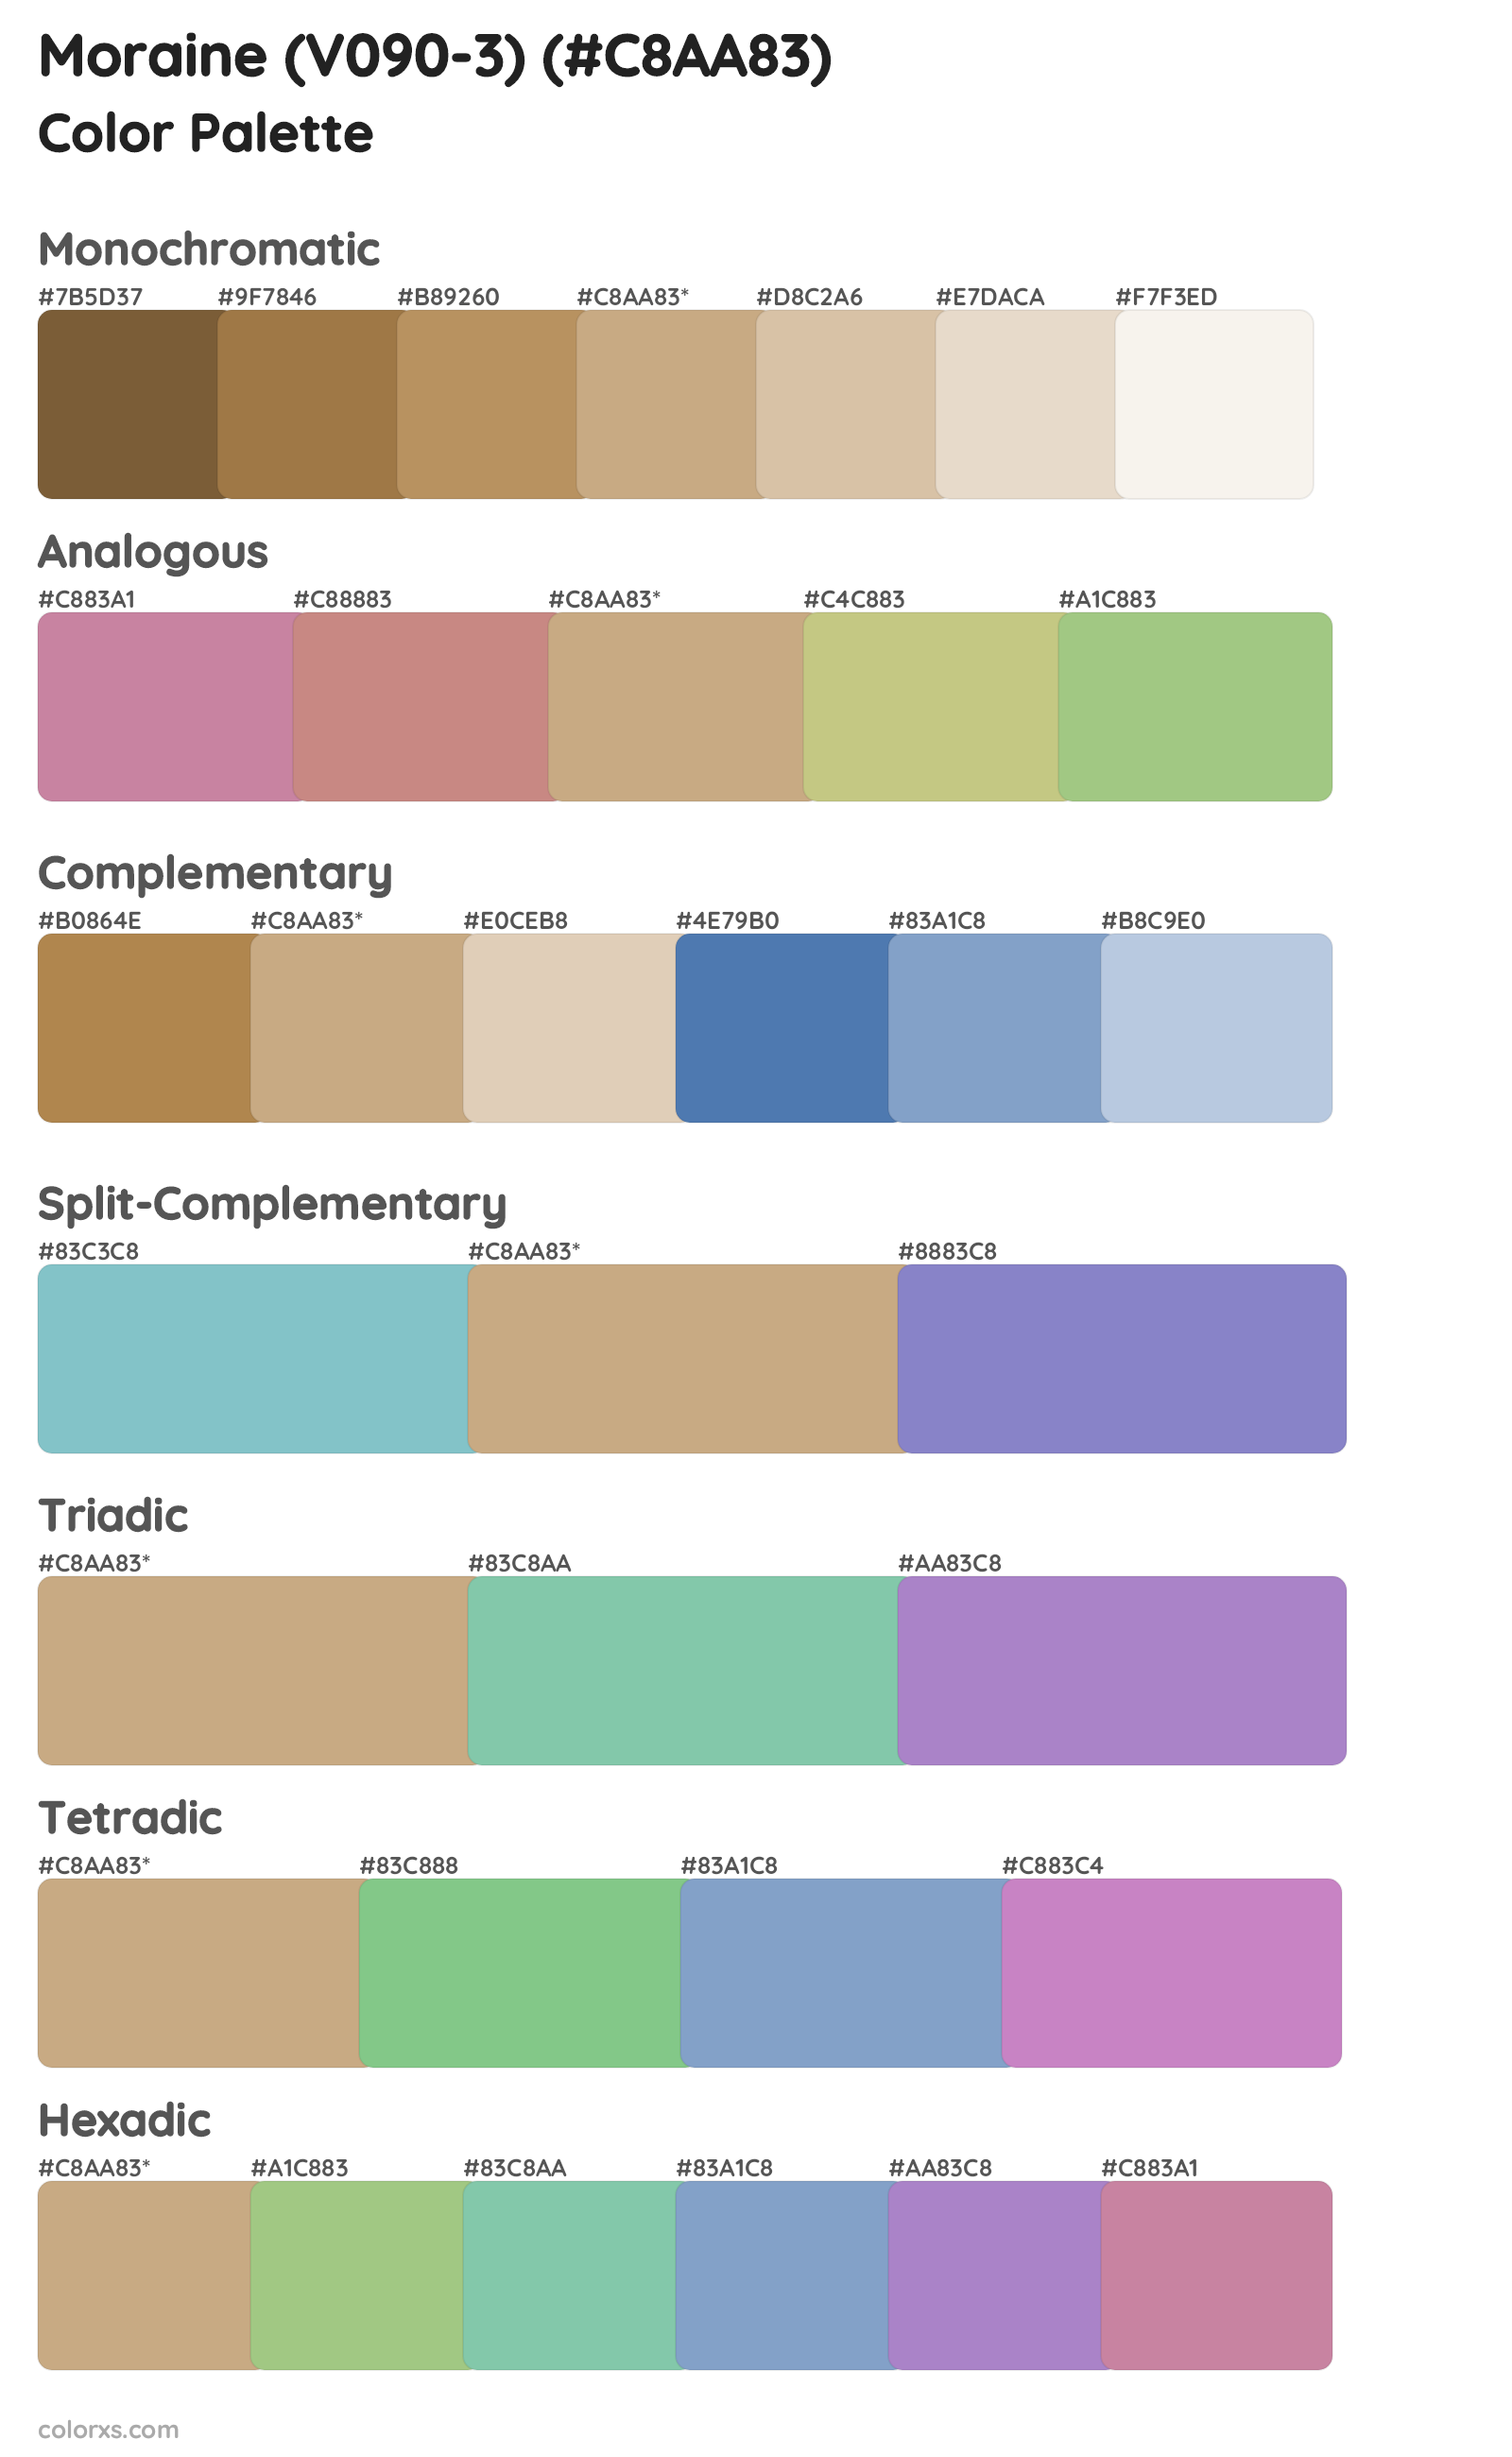 Moraine (V090-3) Color Scheme Palettes